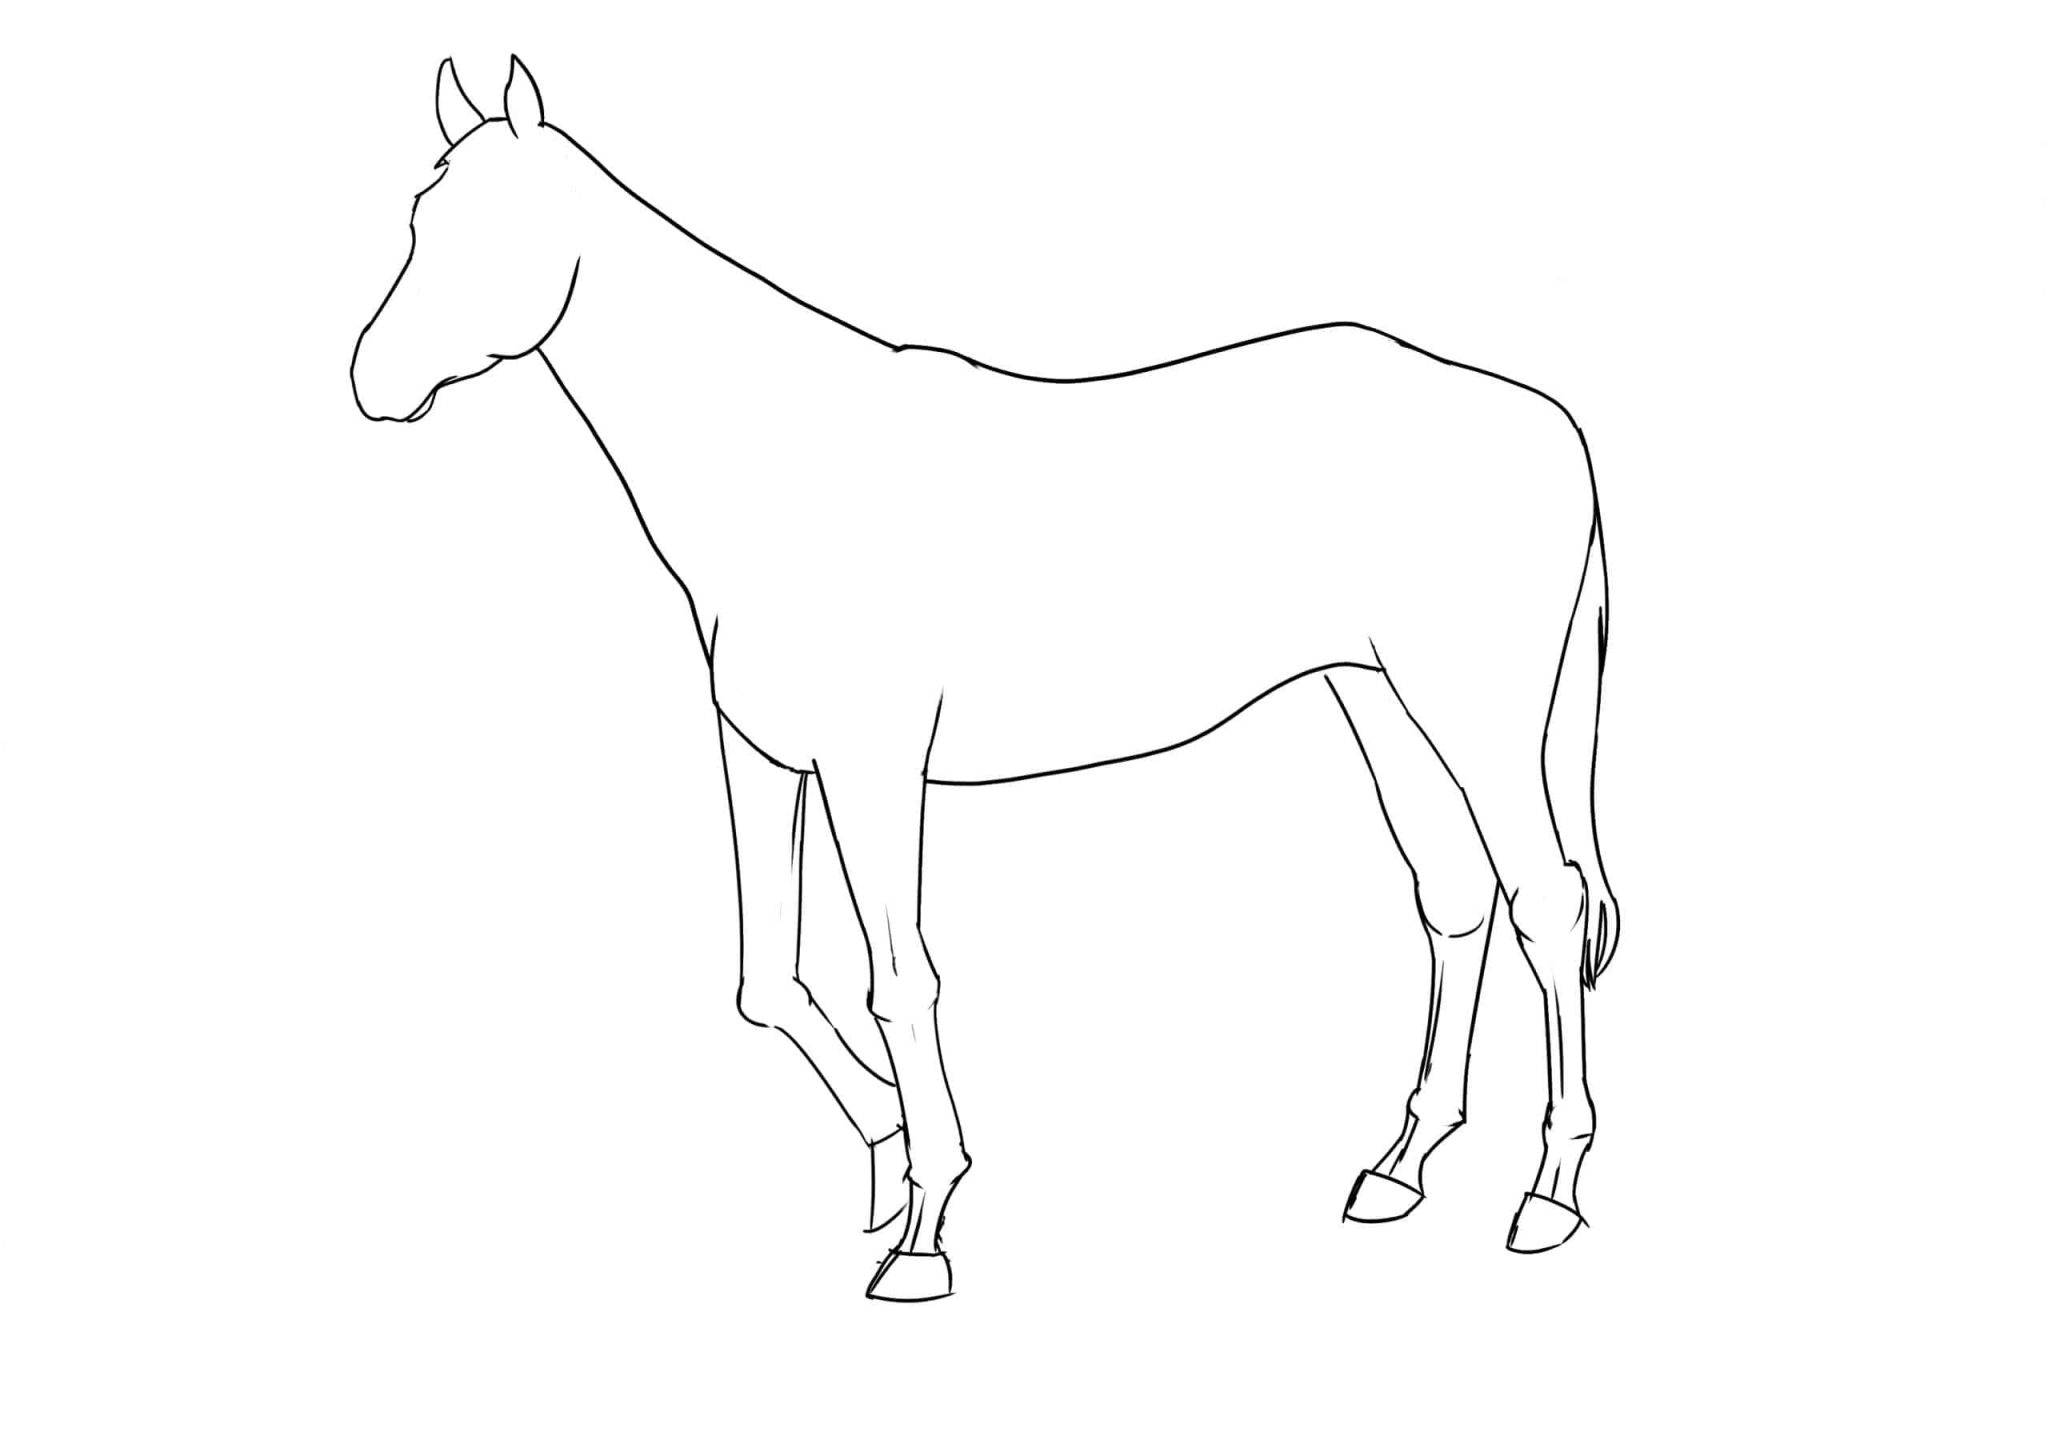 Pferd Zeichnen Lernen - 7 Schritte Für Ein Anatomisch ganzes Pferde